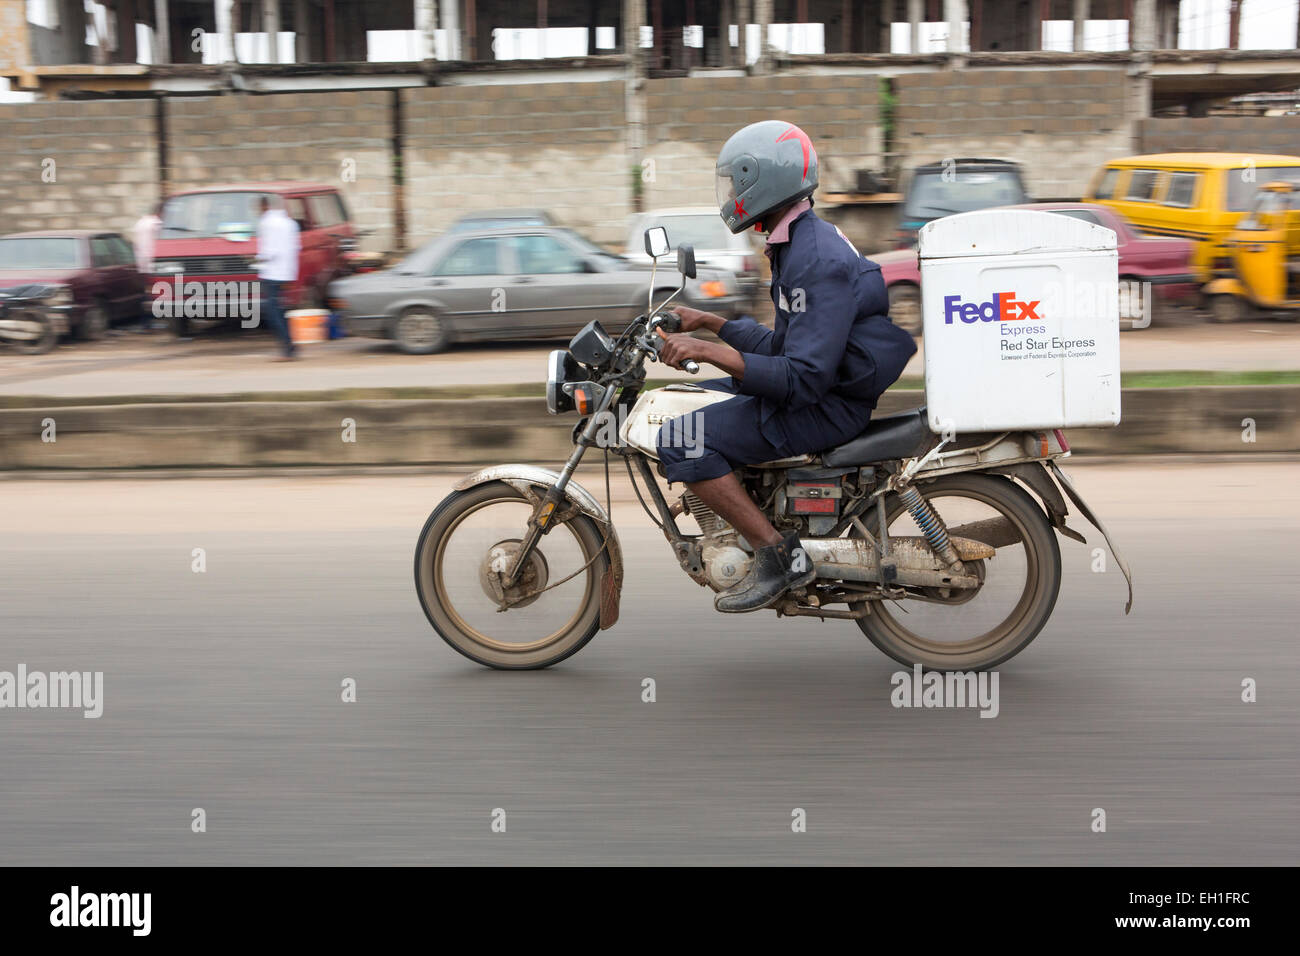 Lagos, Nigeria ; vélo de livraison Fedex au travail Banque D'Images